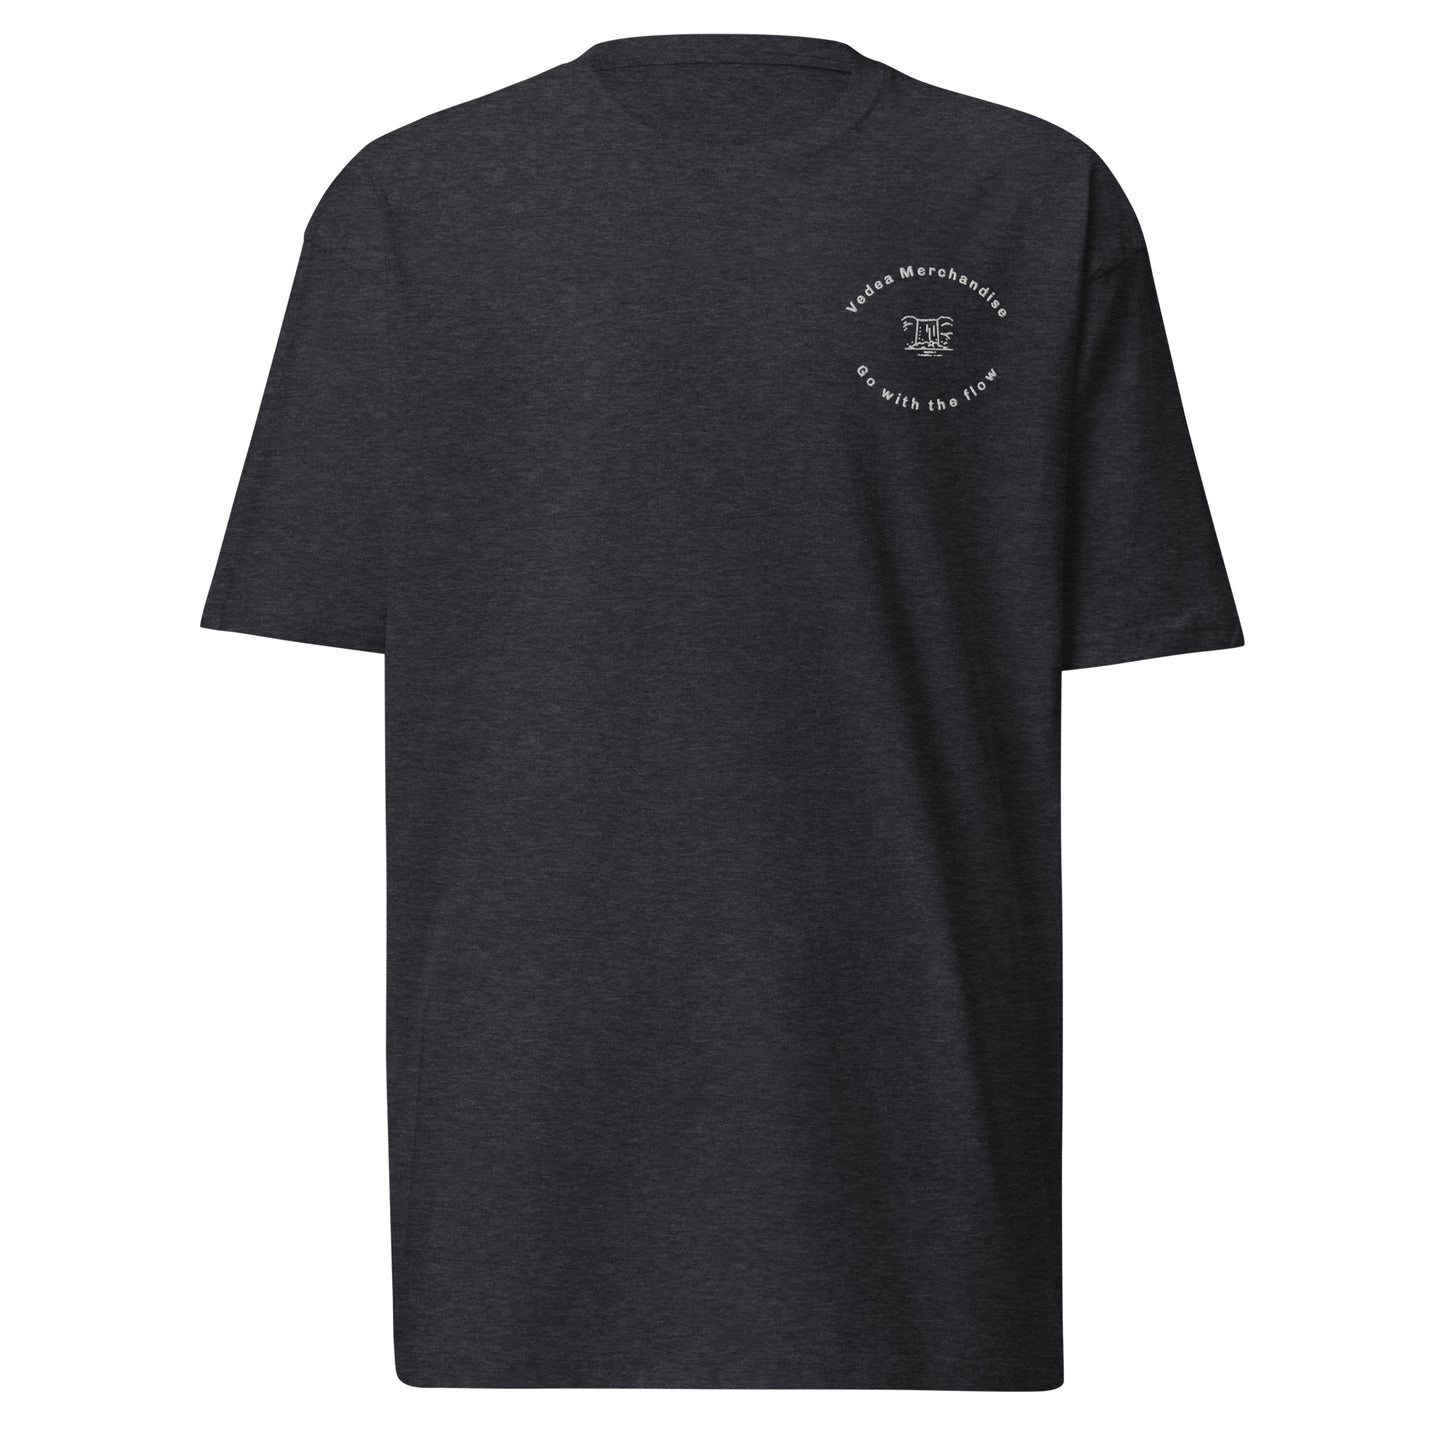 Vedea Original Men’s Premium T-Shirt